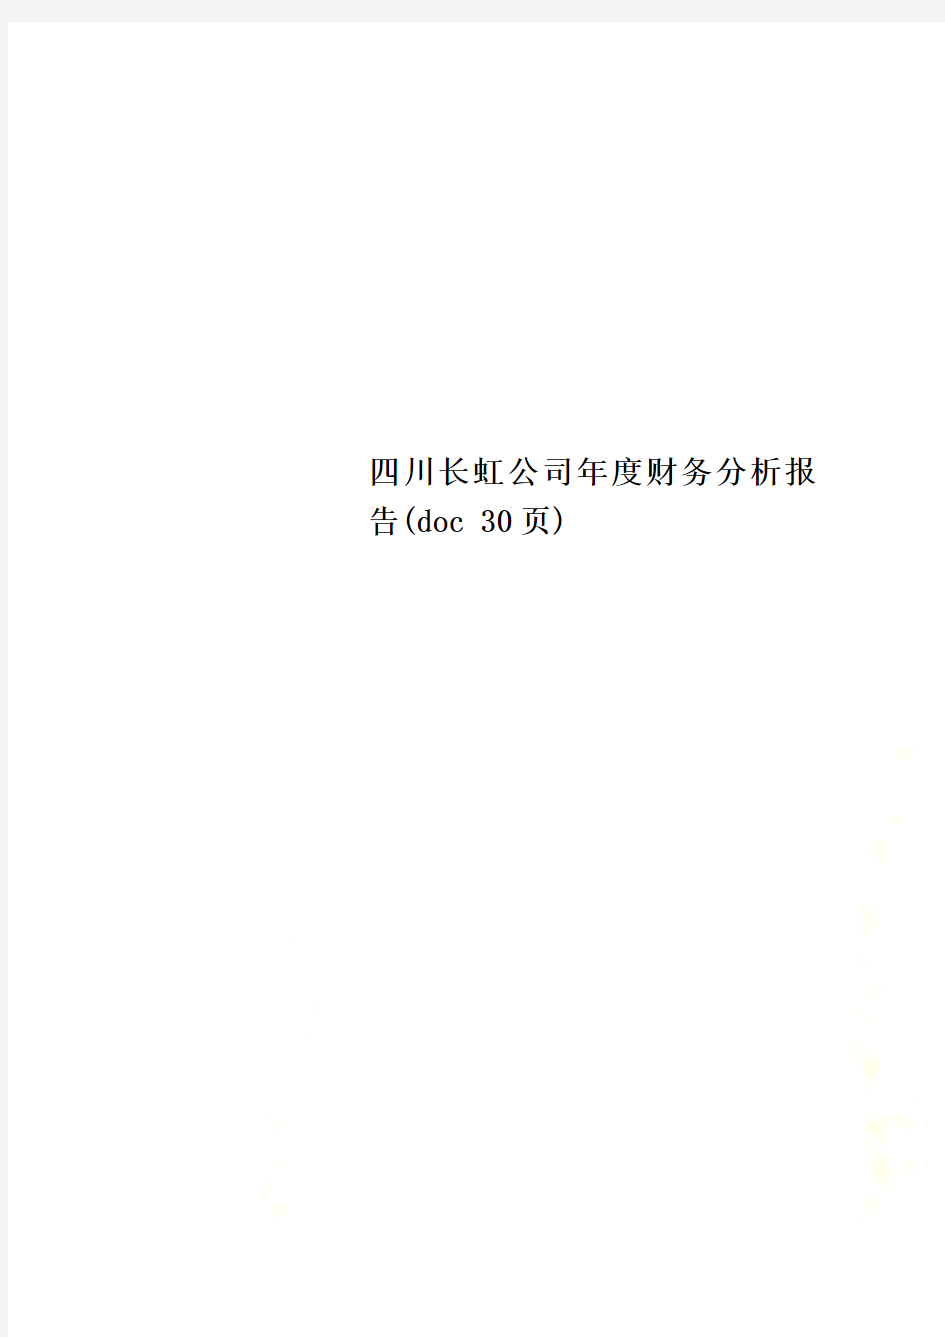 四川长虹公司年度财务分析报告(doc 30页)